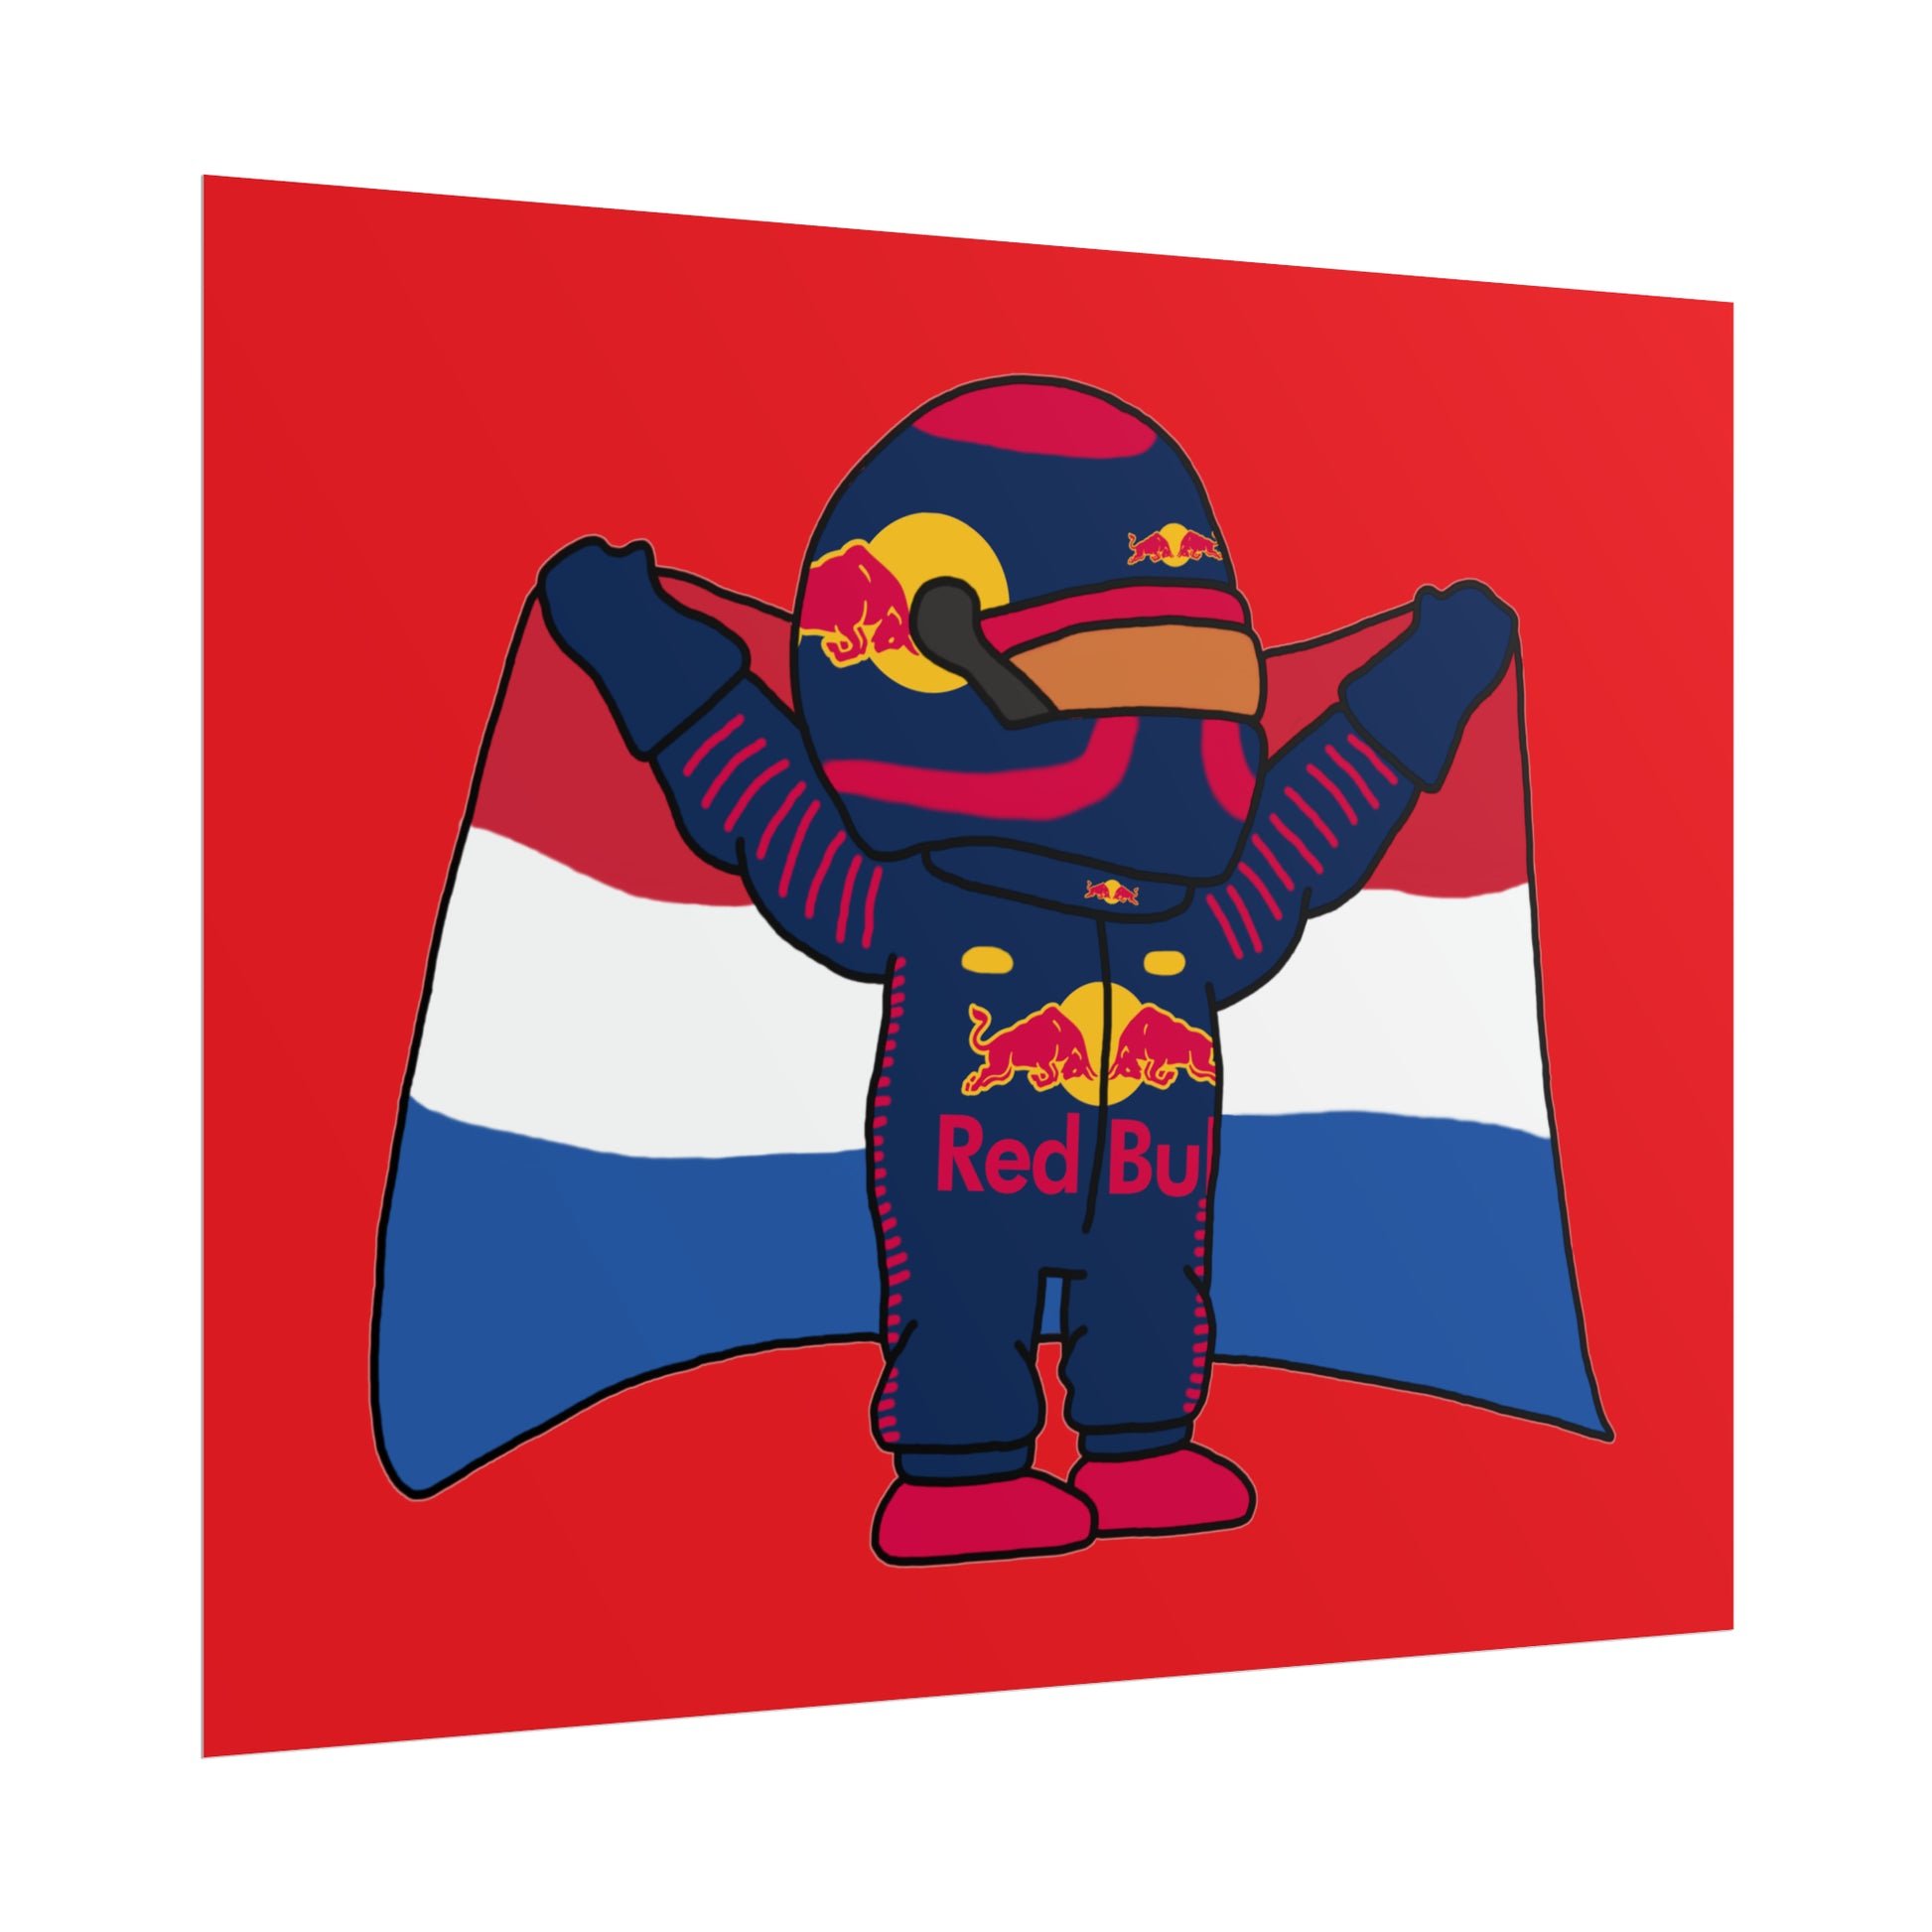 NeVerStappen Red Bull Formula 1 F1 Max Verstappen Poster Next Cult Brand F1, Max Verstappen, Red Bull